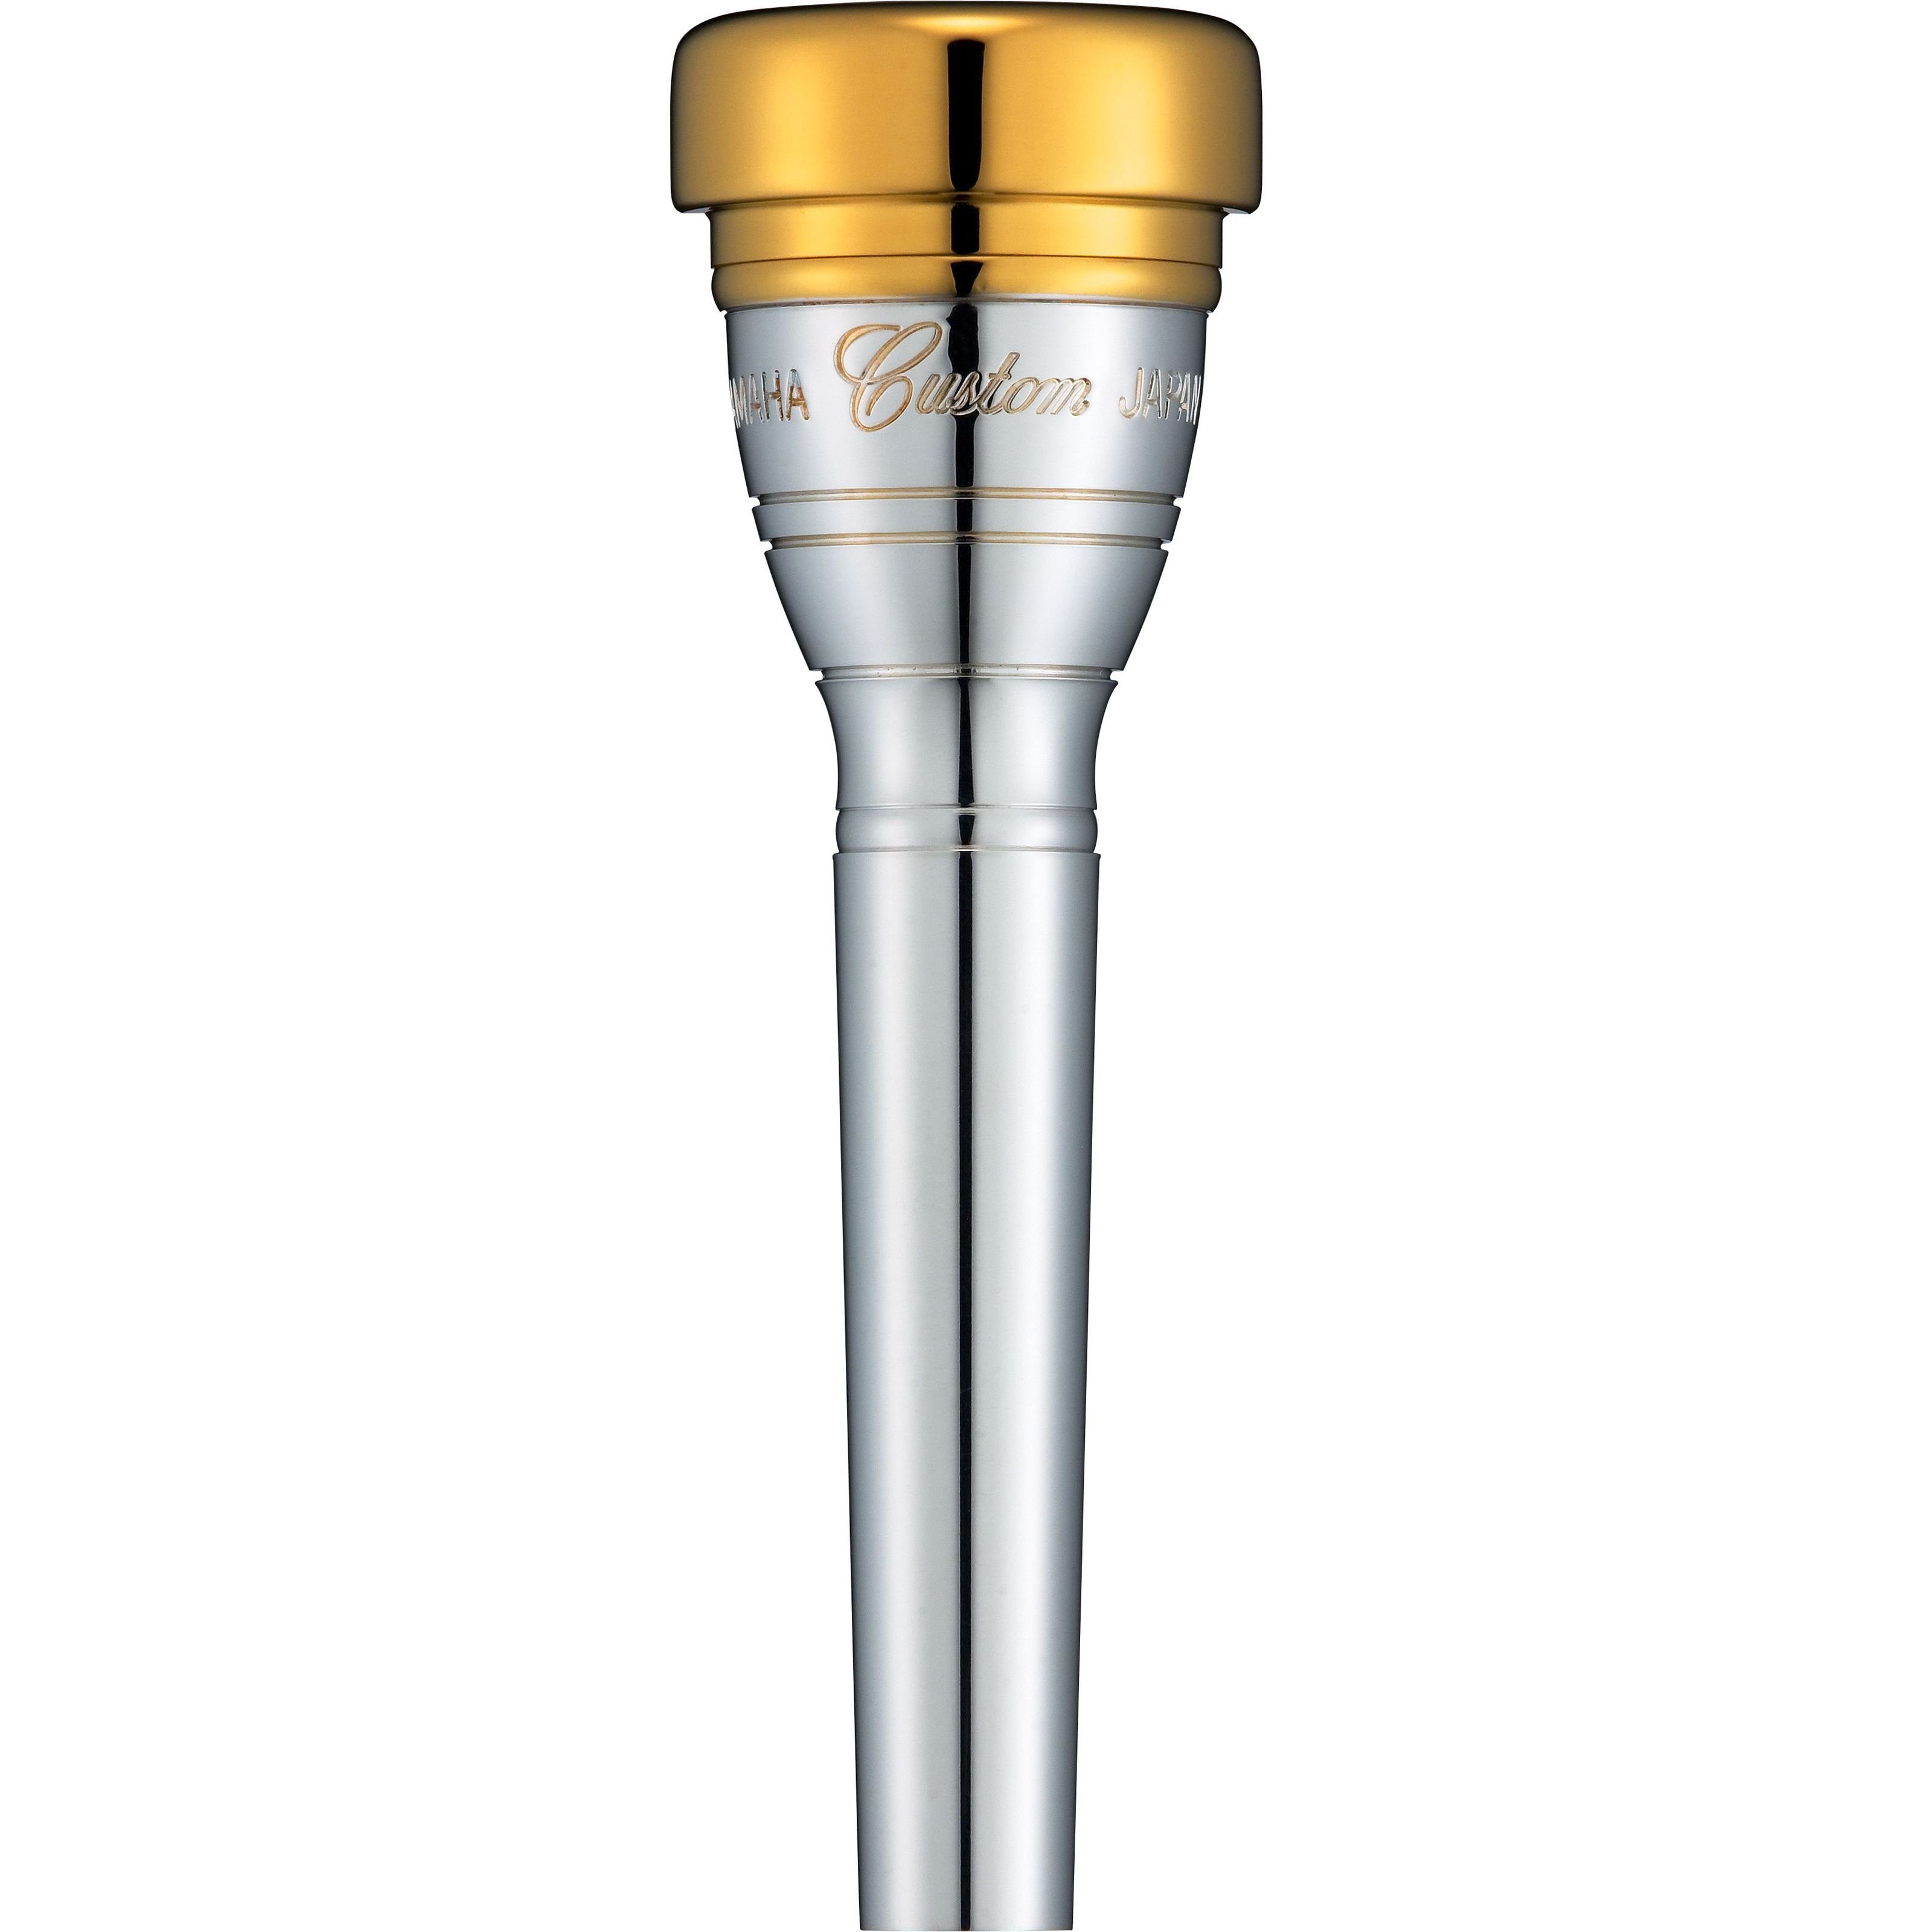 Yamaha Trompeten-Mundstück, GP 14C4 Mundstück Trompete GP-Serie - Mundstück für Trompete